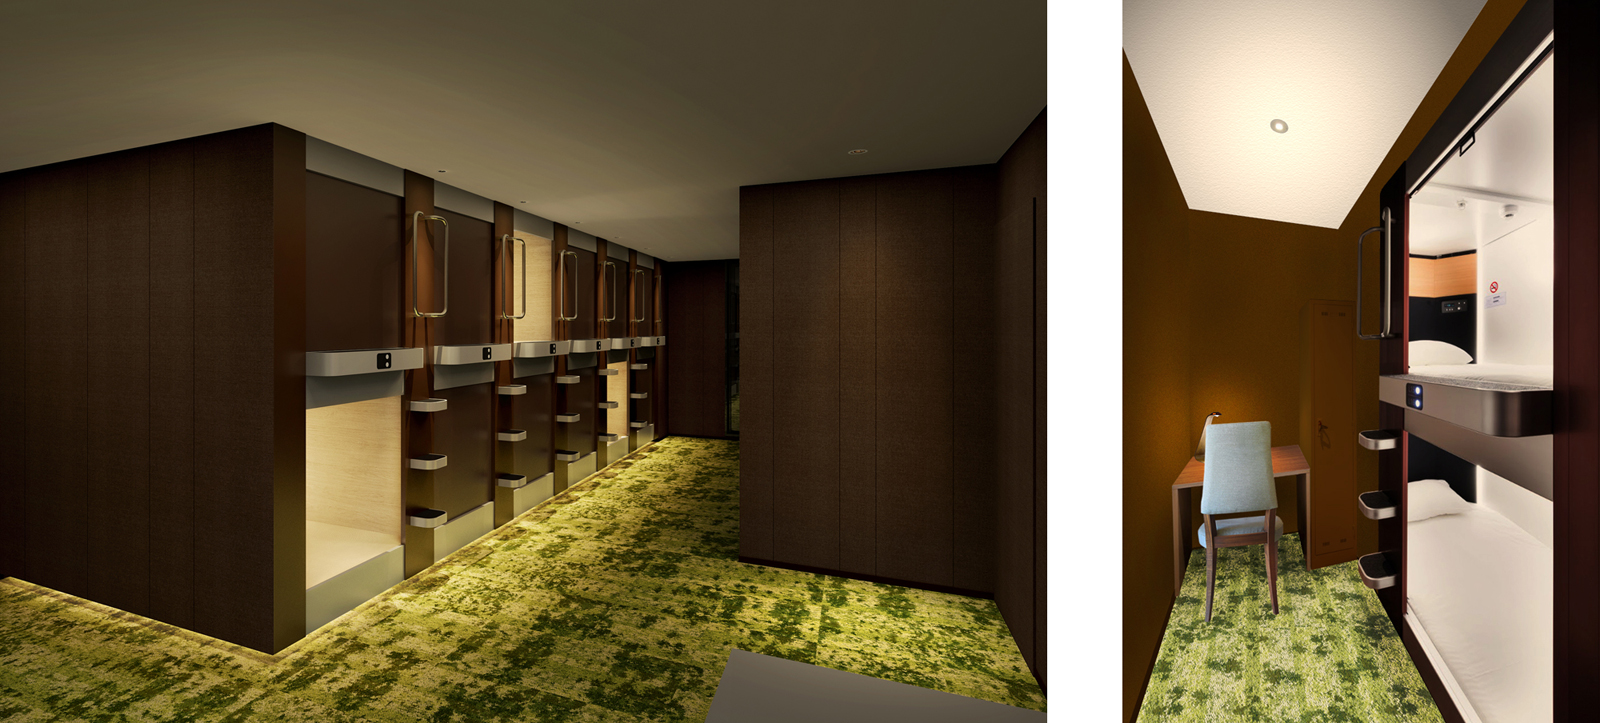 パーソナルスペース「カプセルベッド」は、東京西川と共同開発したオリジナルマットレスを全室に採用